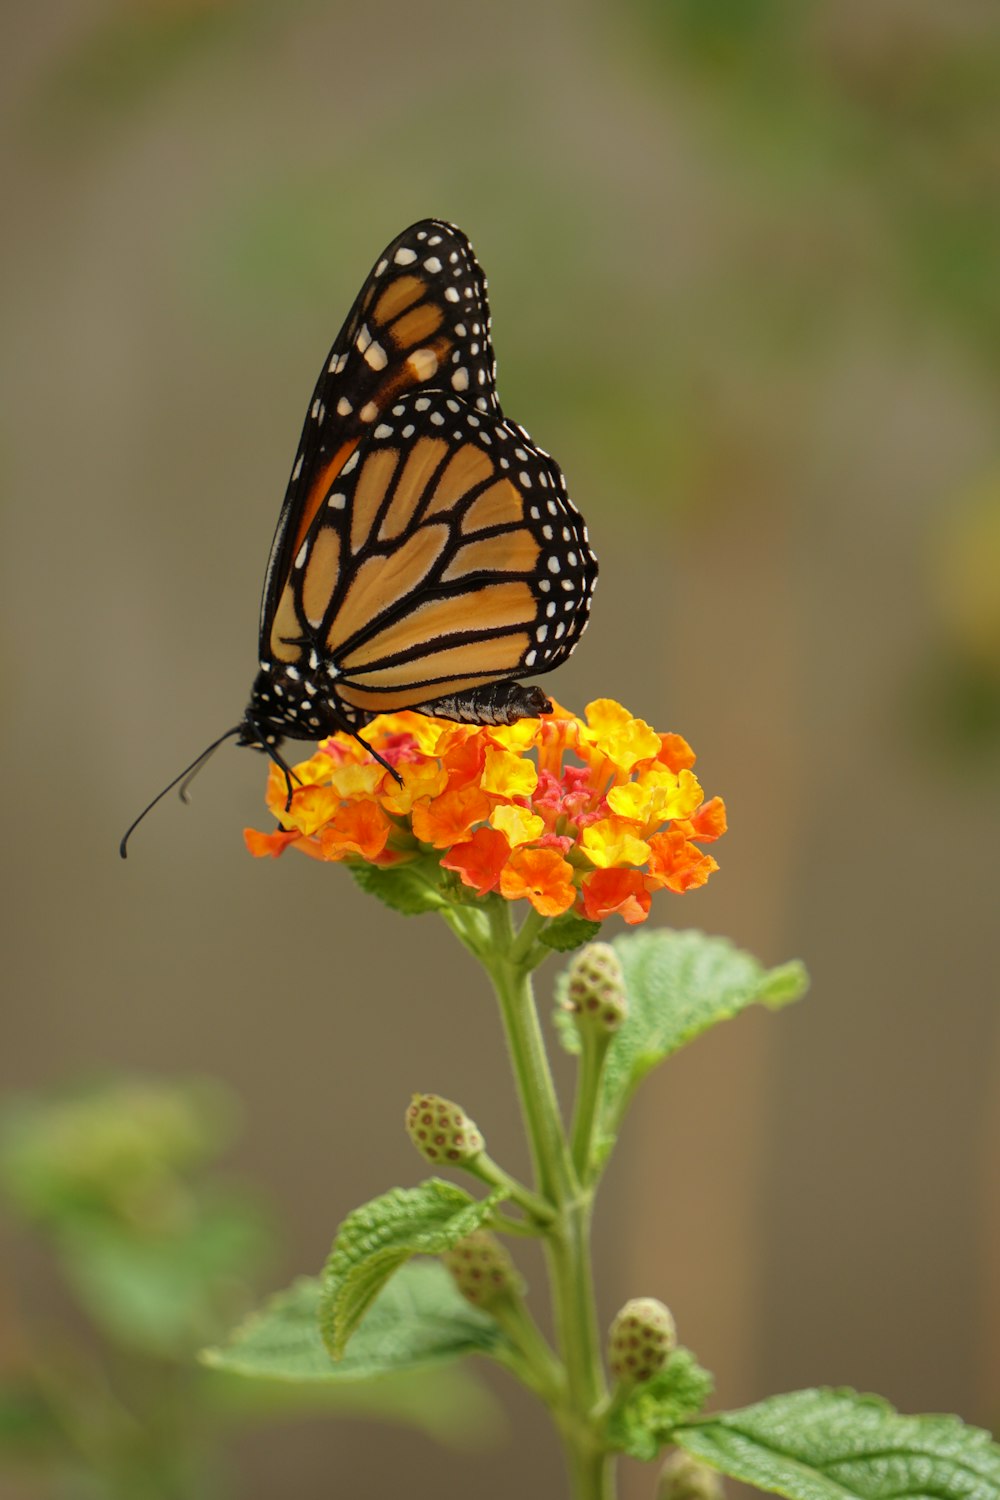 borboleta monarca empoleirada na flor de laranjeira em fotografia de perto durante o dia